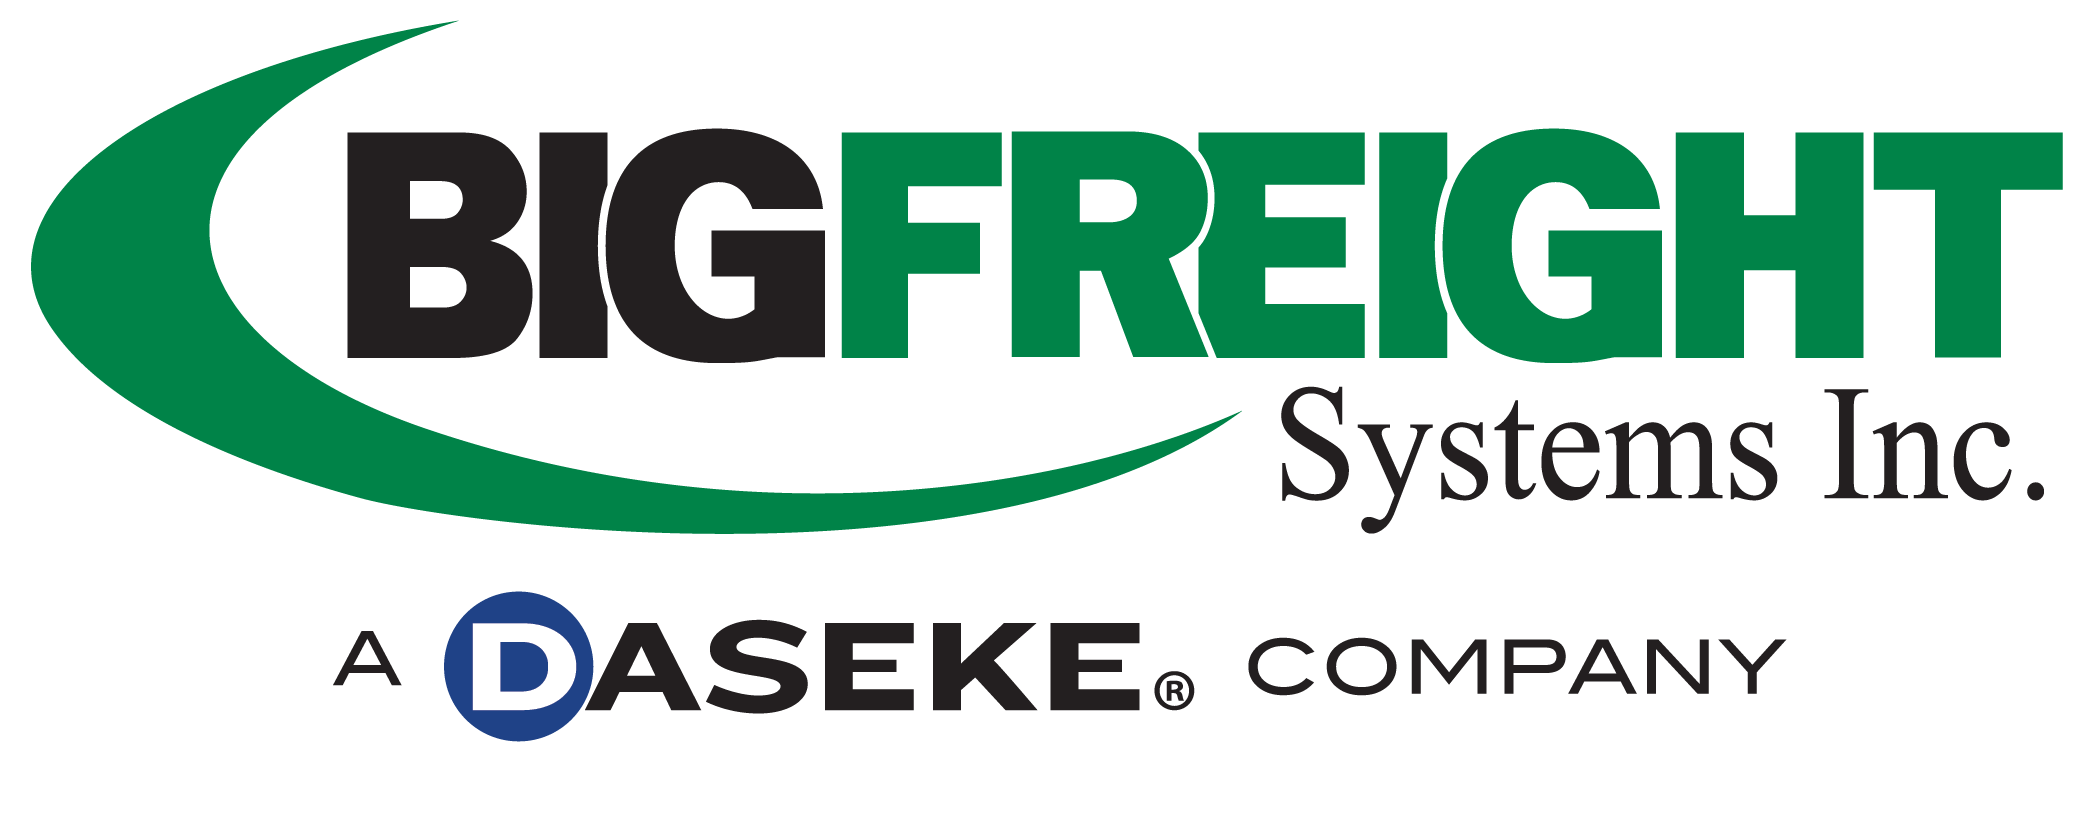 Big Freight Systems Inc A Daseke Company logo